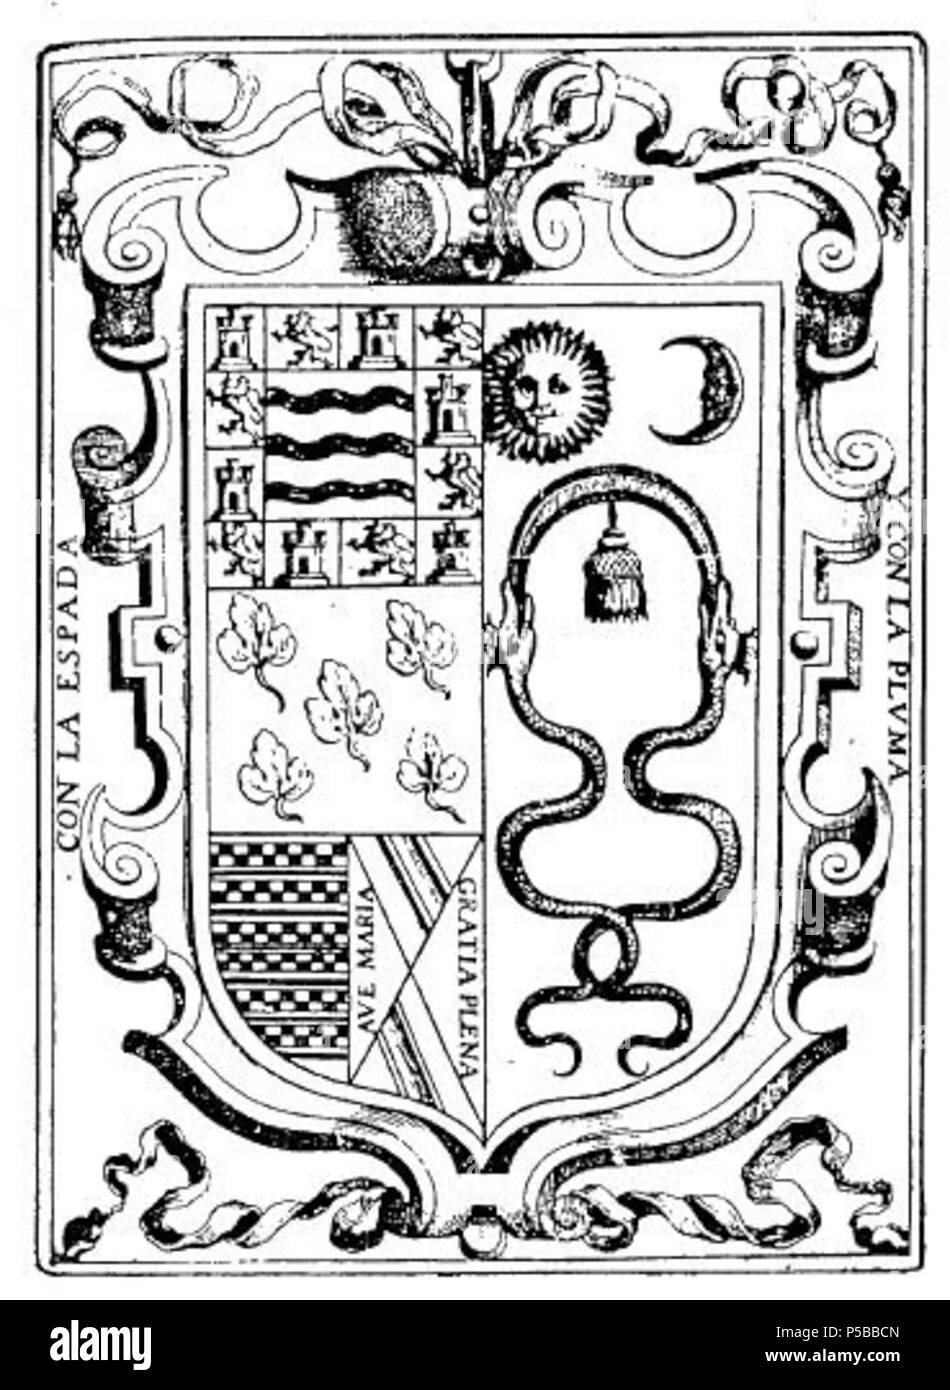 N/A. Español: Escudo nobiliario del Inca Garcilaso de la Vega . 1609. Inca Garcilaso de la Vega 525 Escudo Inca Garcilaso Stock Photo